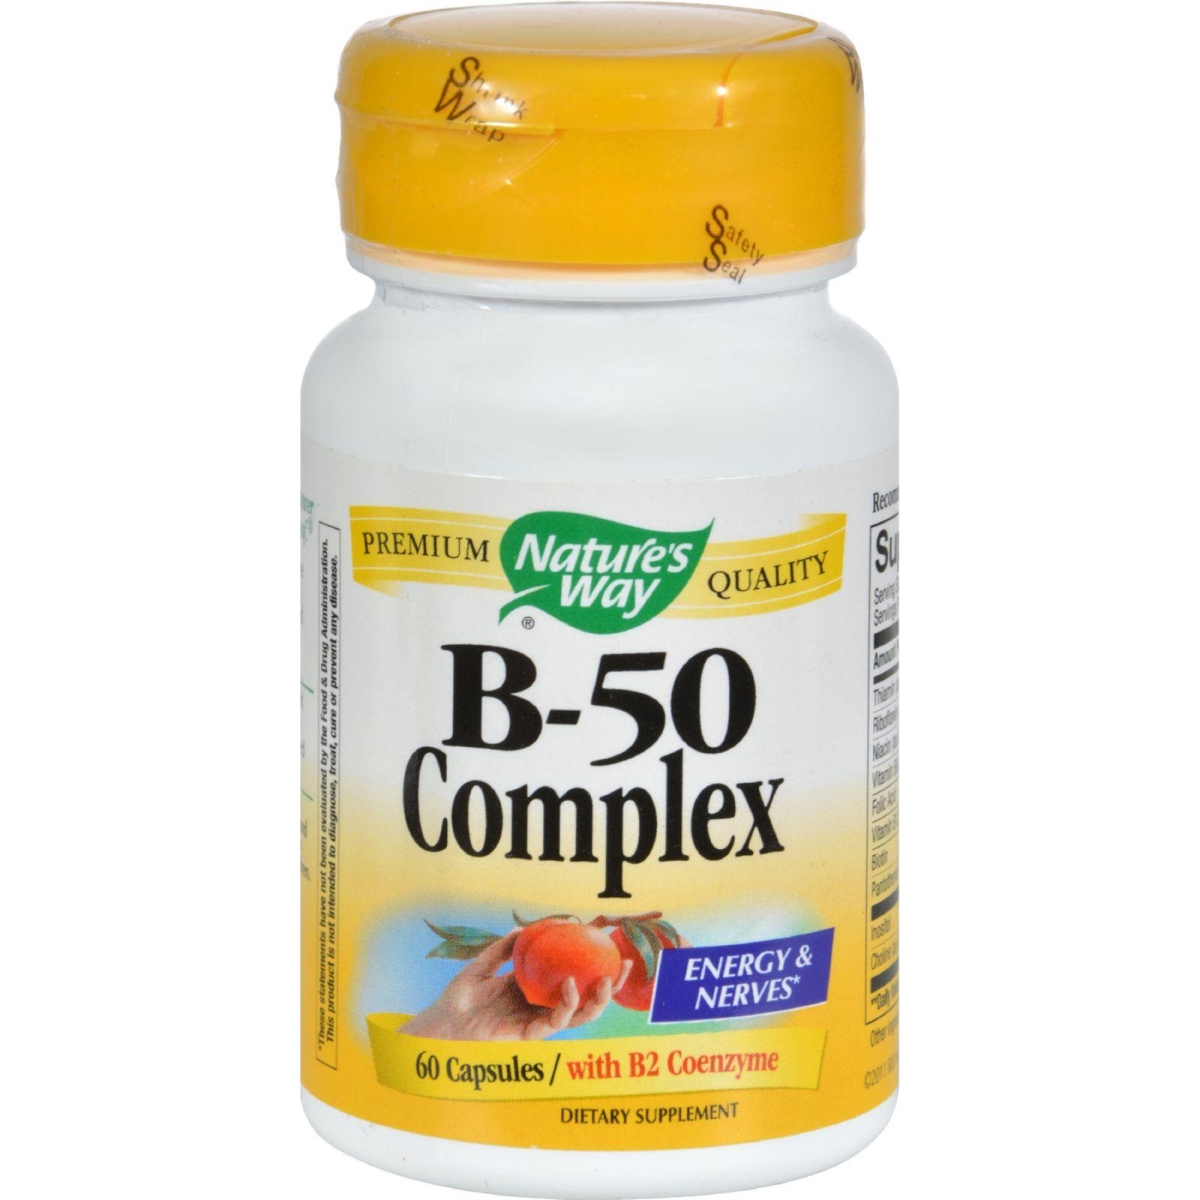 Hg0817080 Vitamin B-50 Complex - 60 Capsules